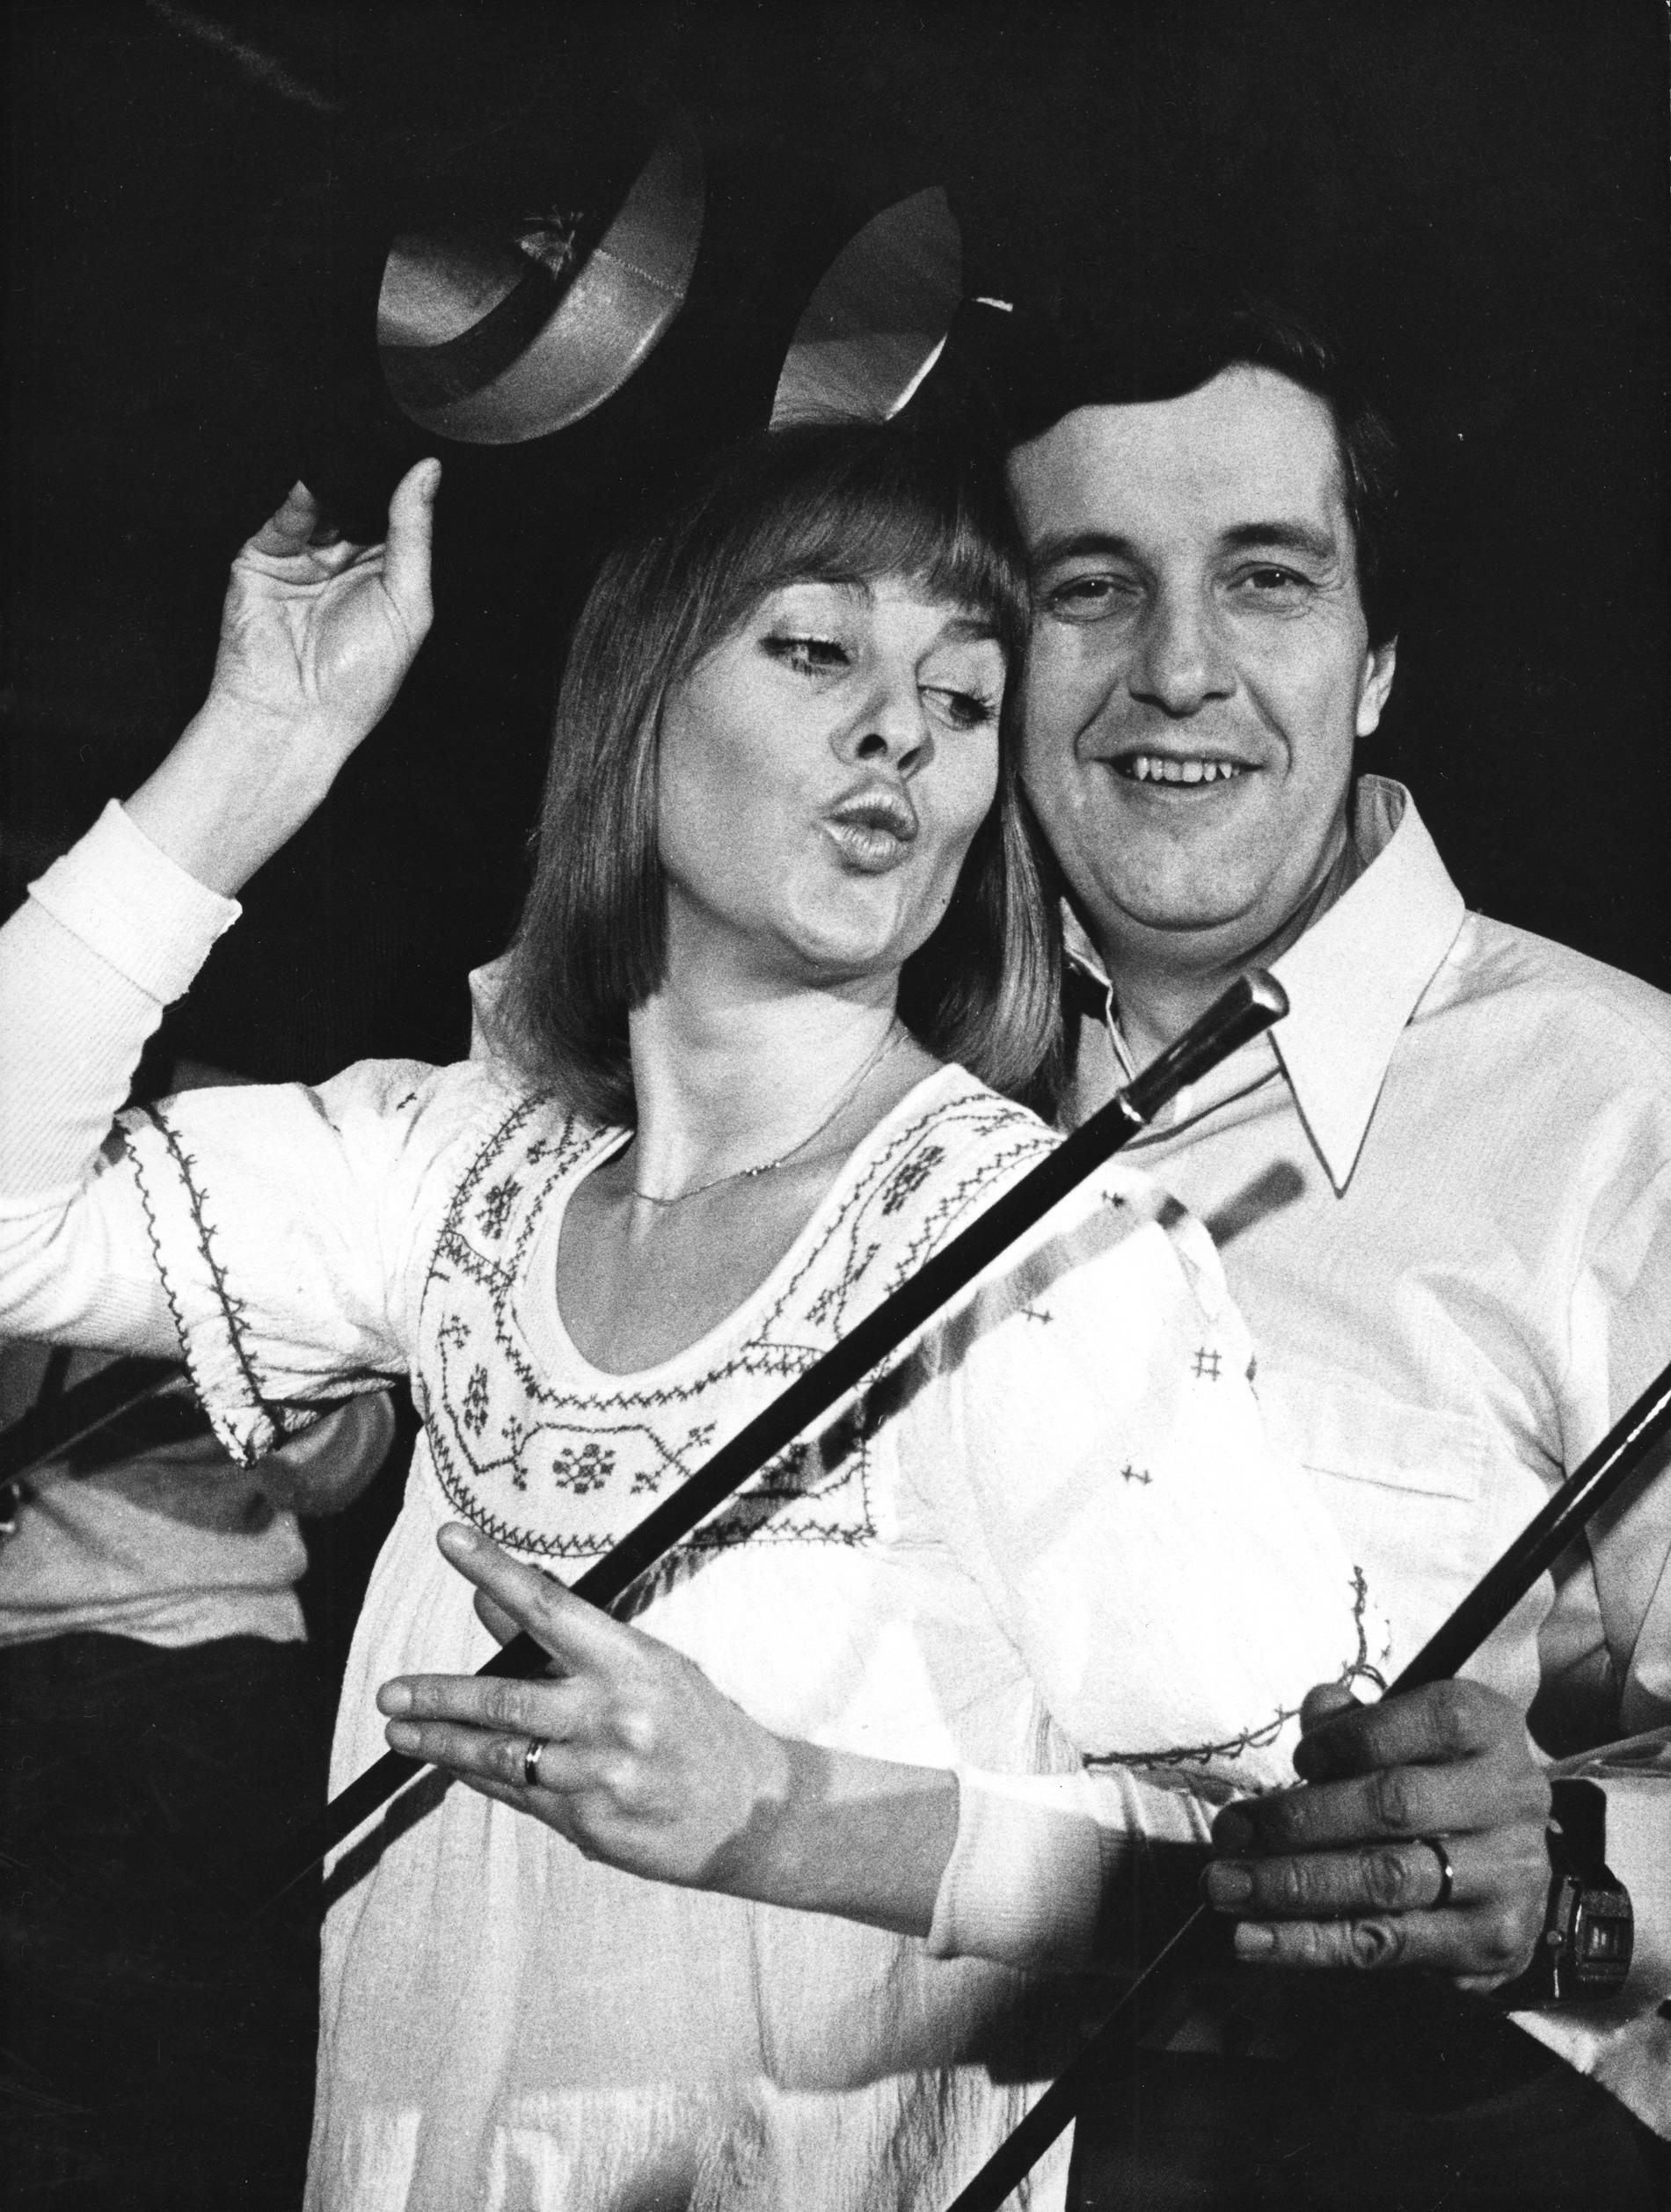 Eva Bysing och Bert-Åke Varg i samband med krogshowen "Fint som snus" i Malmö 1973, som tidigare var en populär TV-serie på SVT.